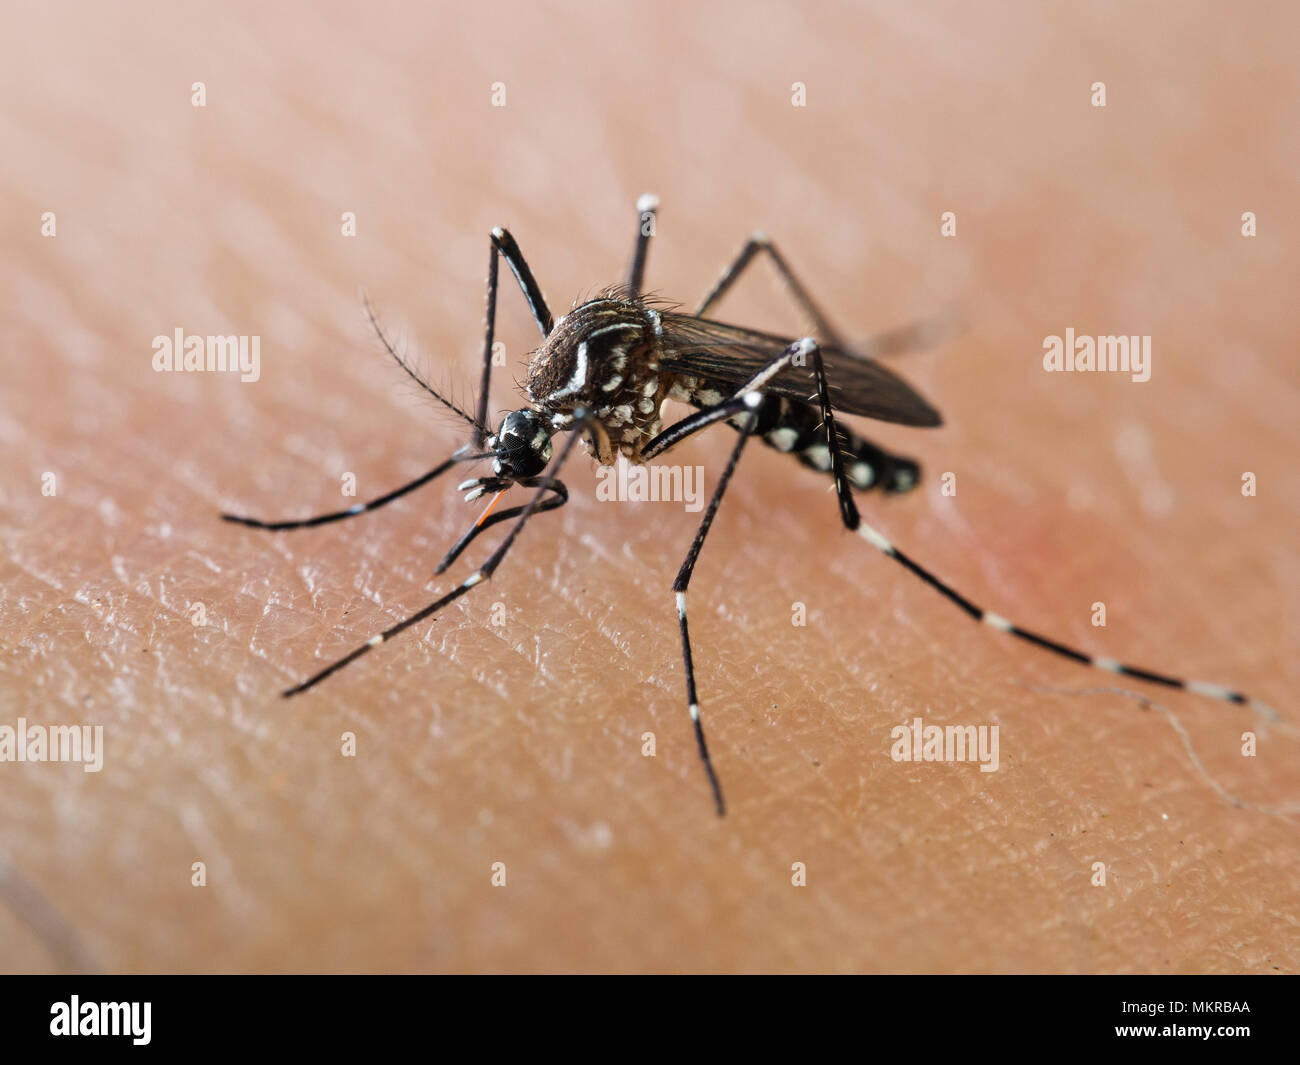 La fièvre jaune / moustique dengue sucer le sang humain, macro montrant les dessins de ce blanc caractéristique des culicidés. Banque D'Images